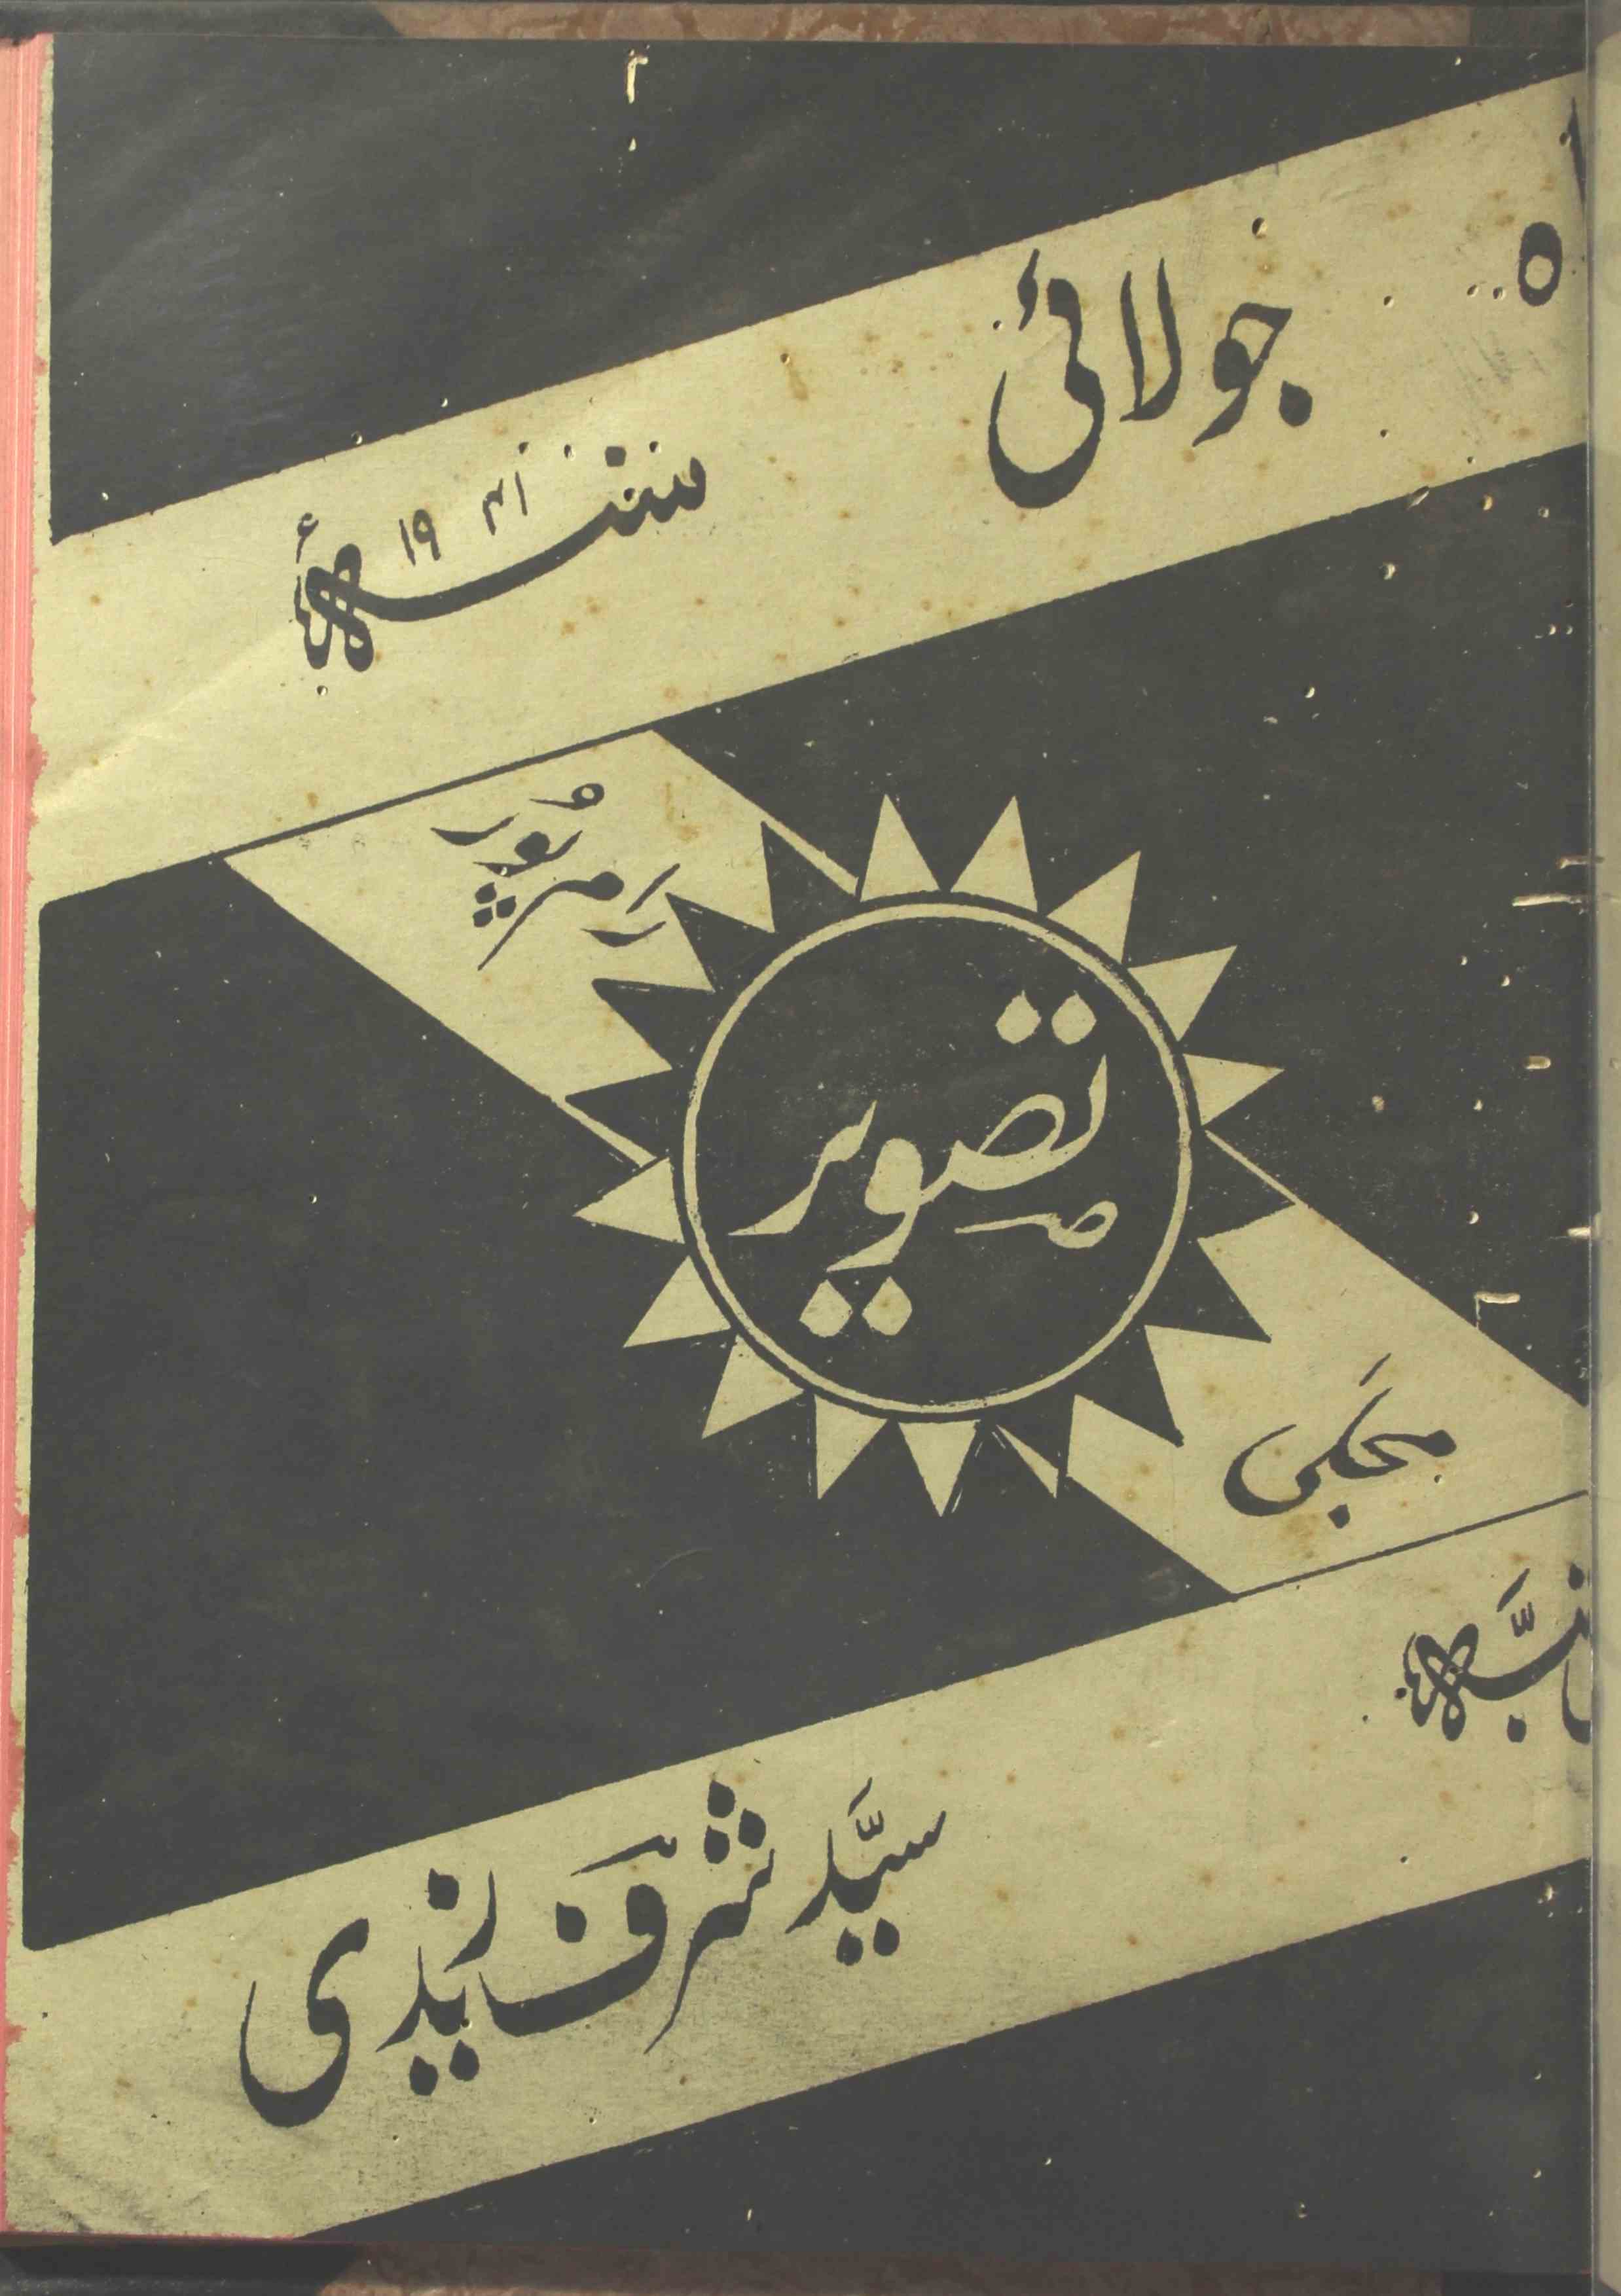 Tasveer Jild 3 No 7 July 1941